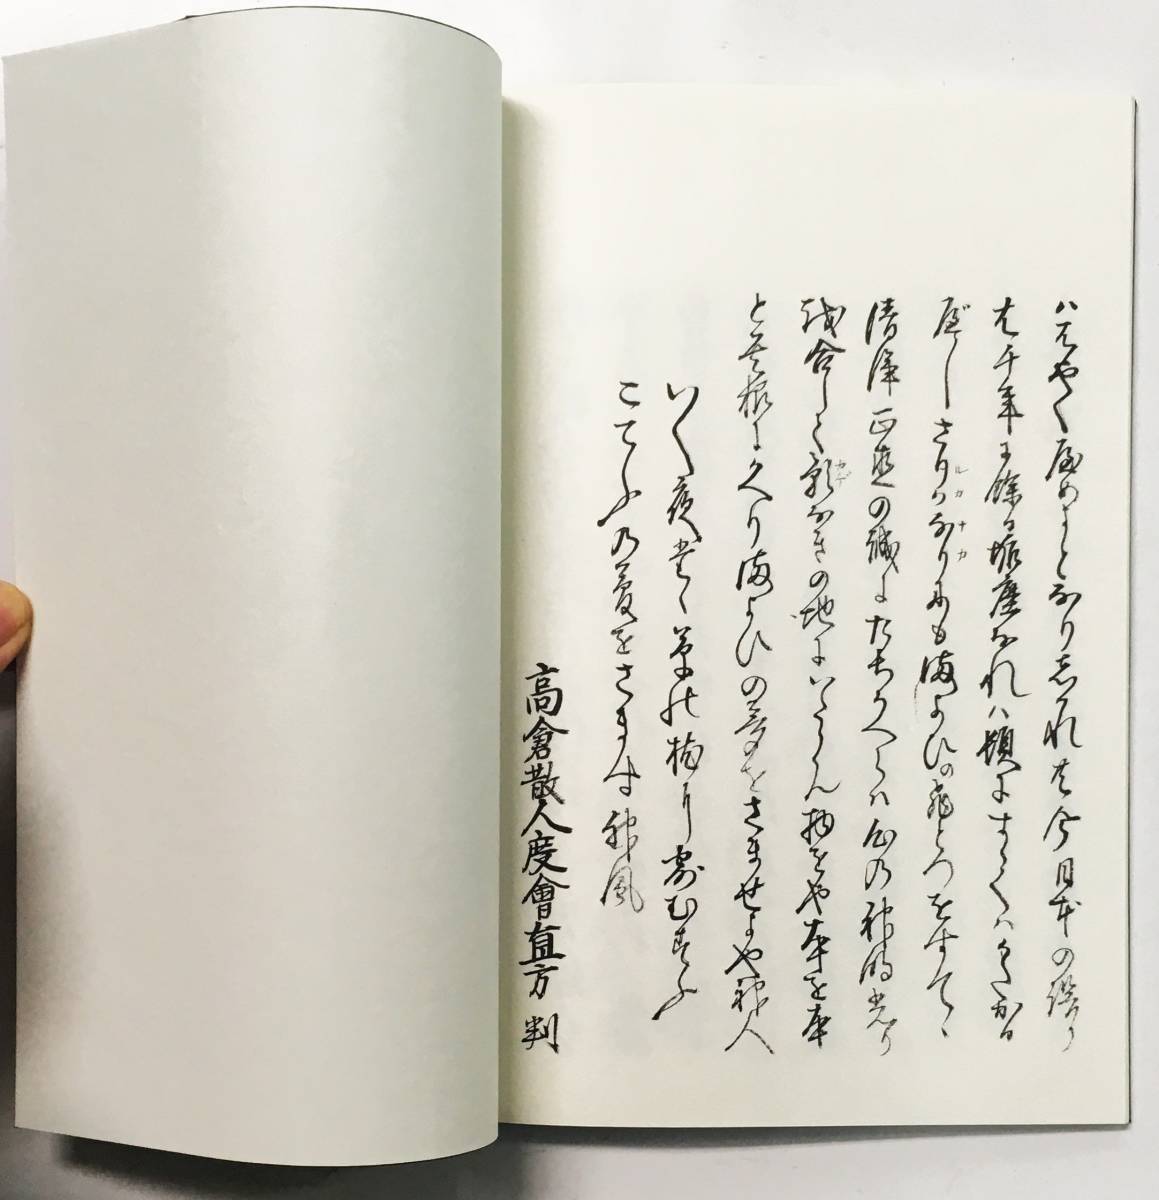 [ бог плата знак ..| синтоизм история ]( Hachiman книжный магазин ).. знак бог . знак futoshi старый бог закон .. внутренний мир spilichuaru